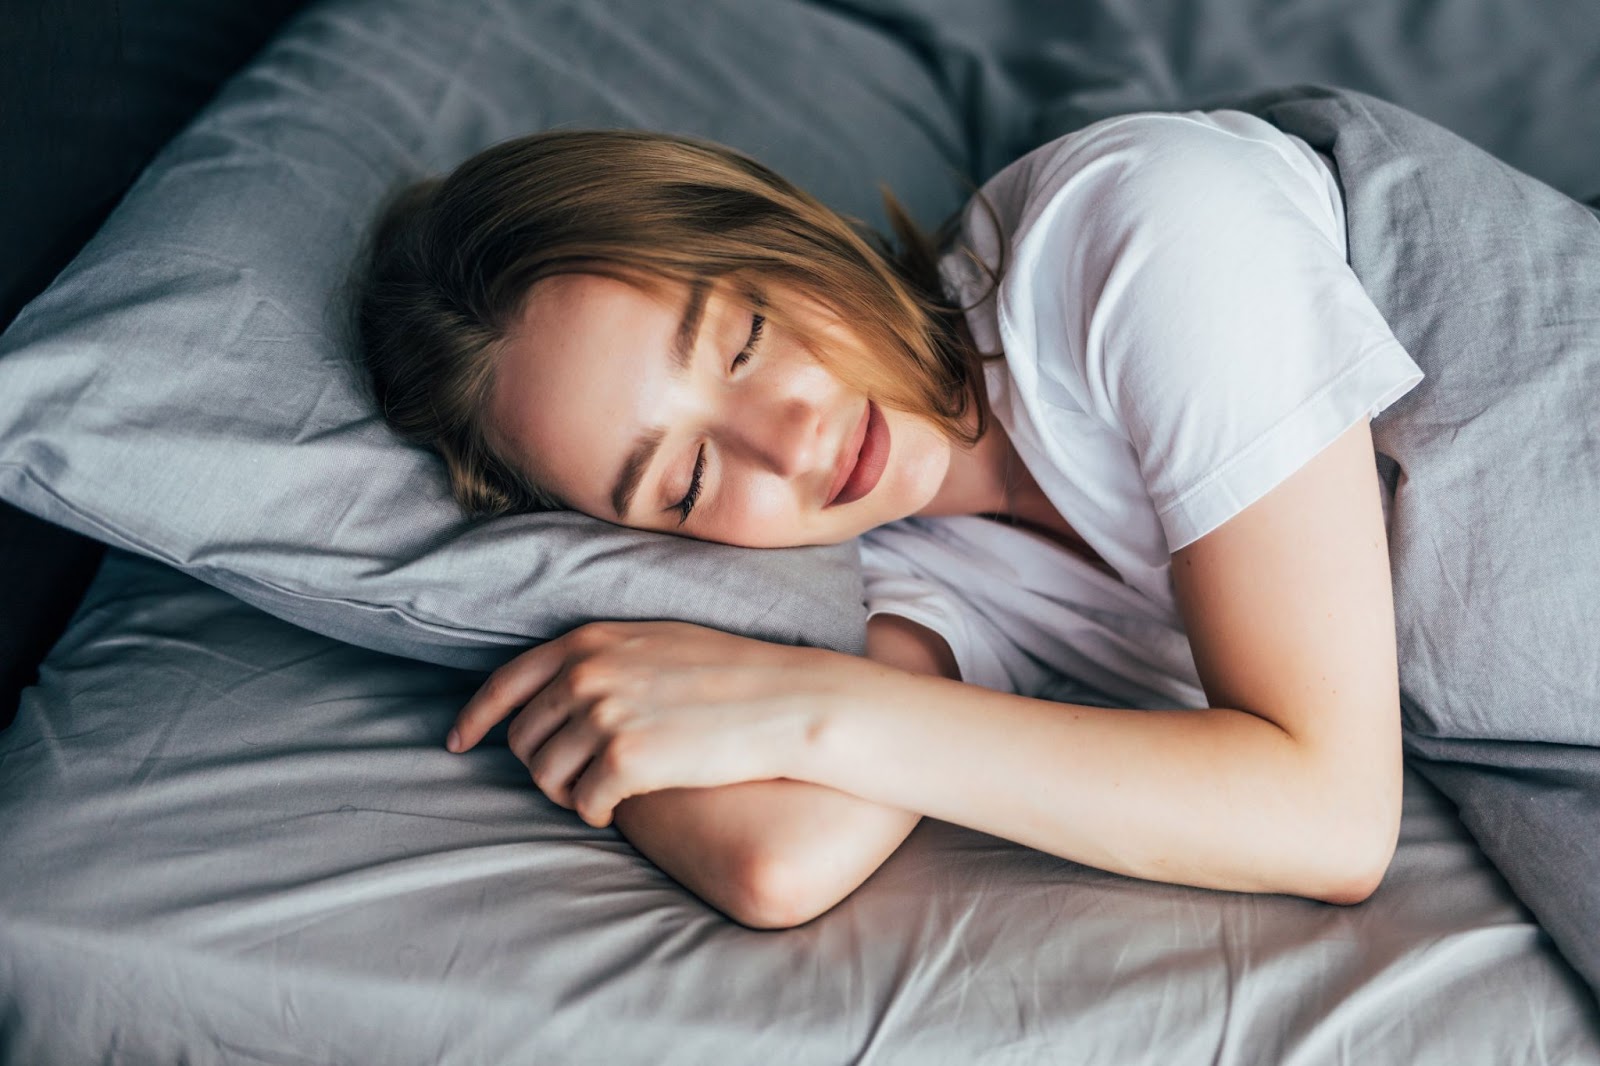 Uma mulher de pele clara e cabelos castanho claro e com uma camisa branca está de olhos fechado, deitada em uma cama com o travesseiro e o cobertor na cor cinza claro.